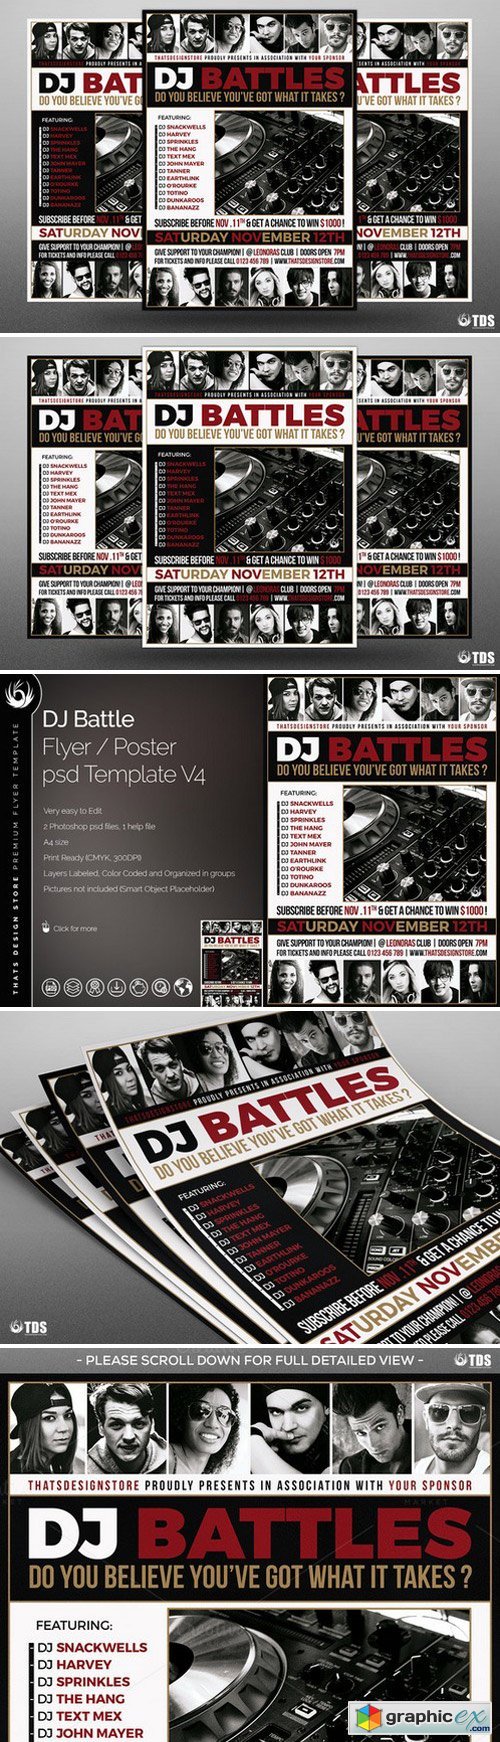 DJ Battle Flyer Template V4